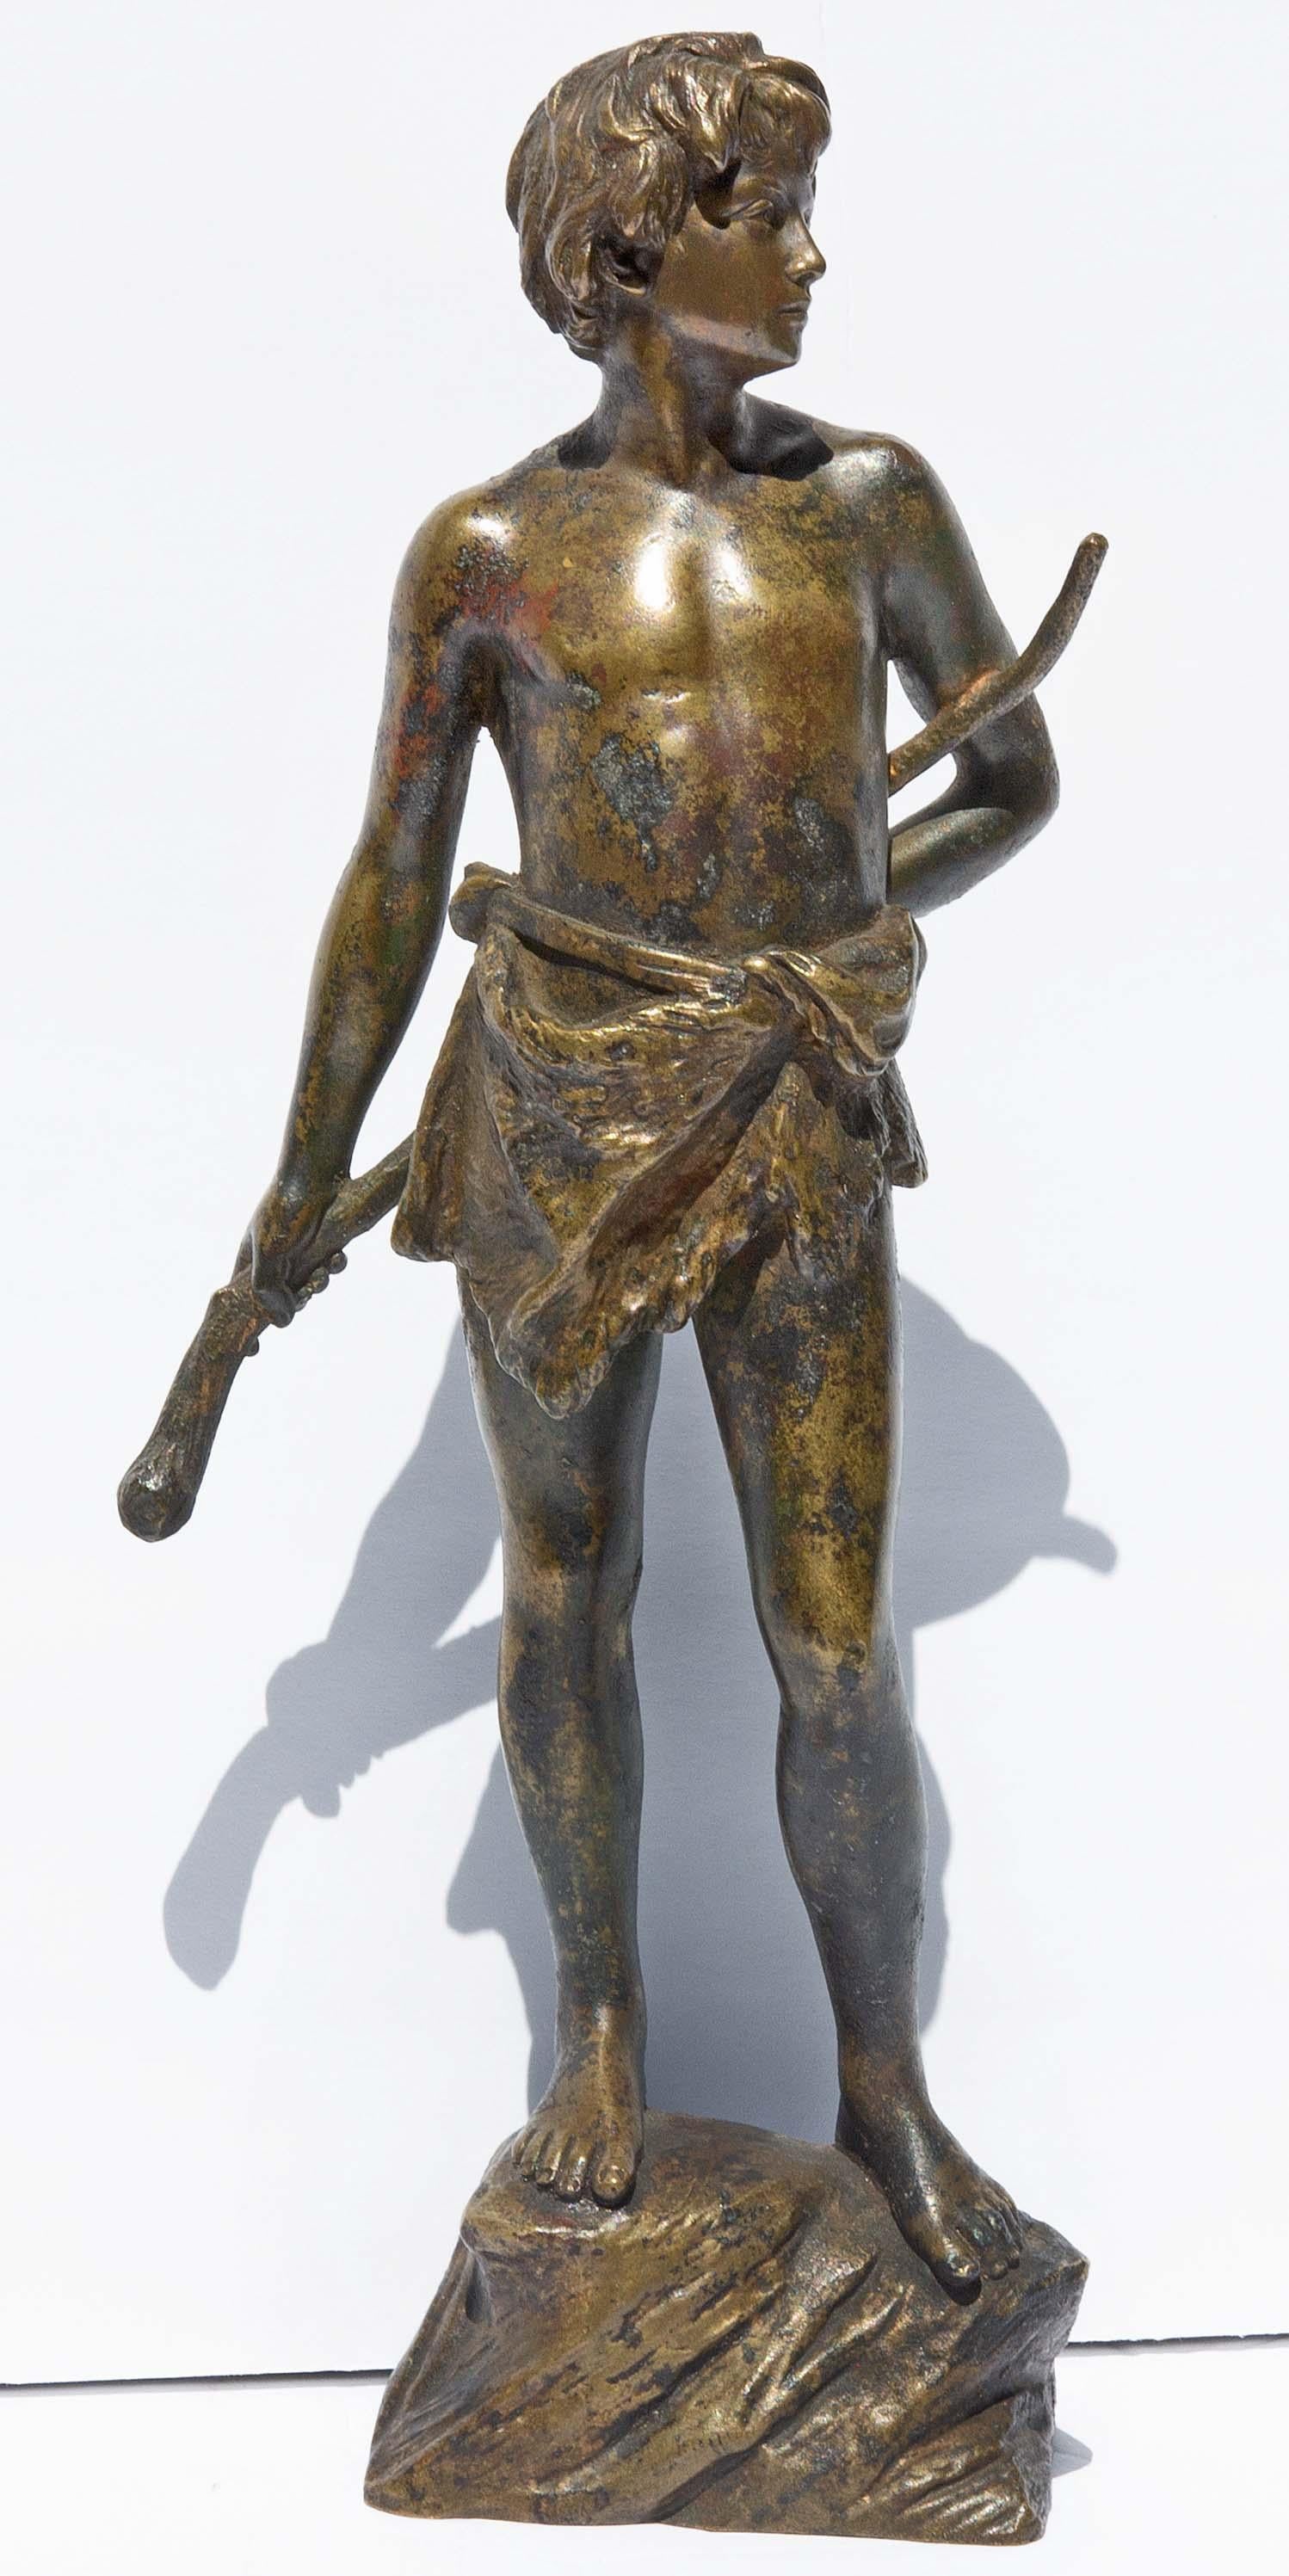 Young Goatherder Bronze Sculpture by Oscar Gladenbeck, circa 1900